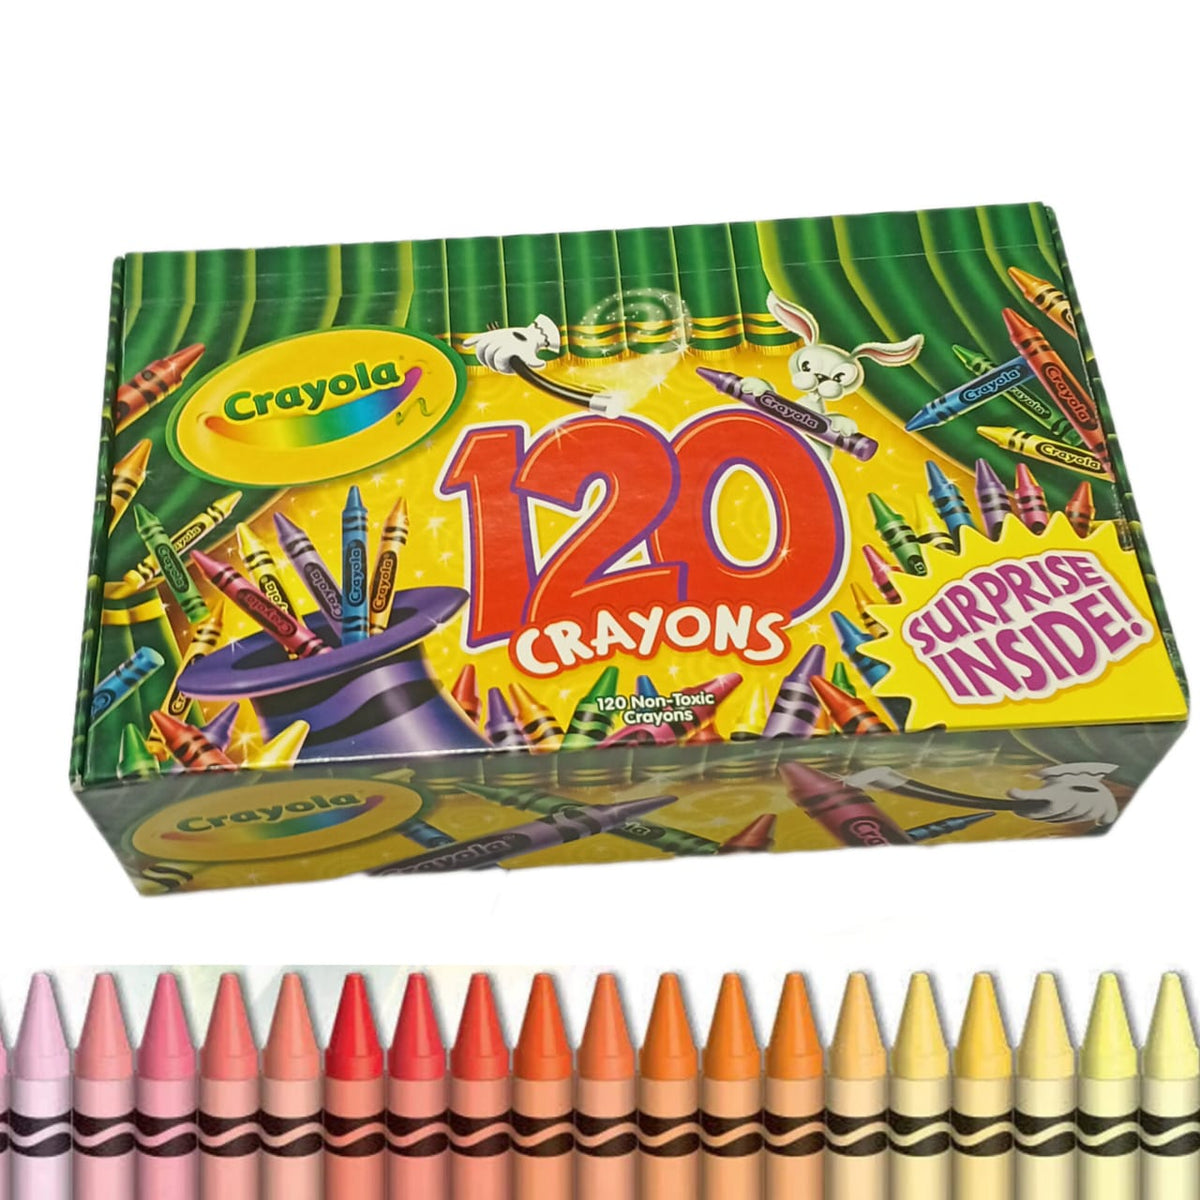 Crayola Crayon Colors Set Of 120